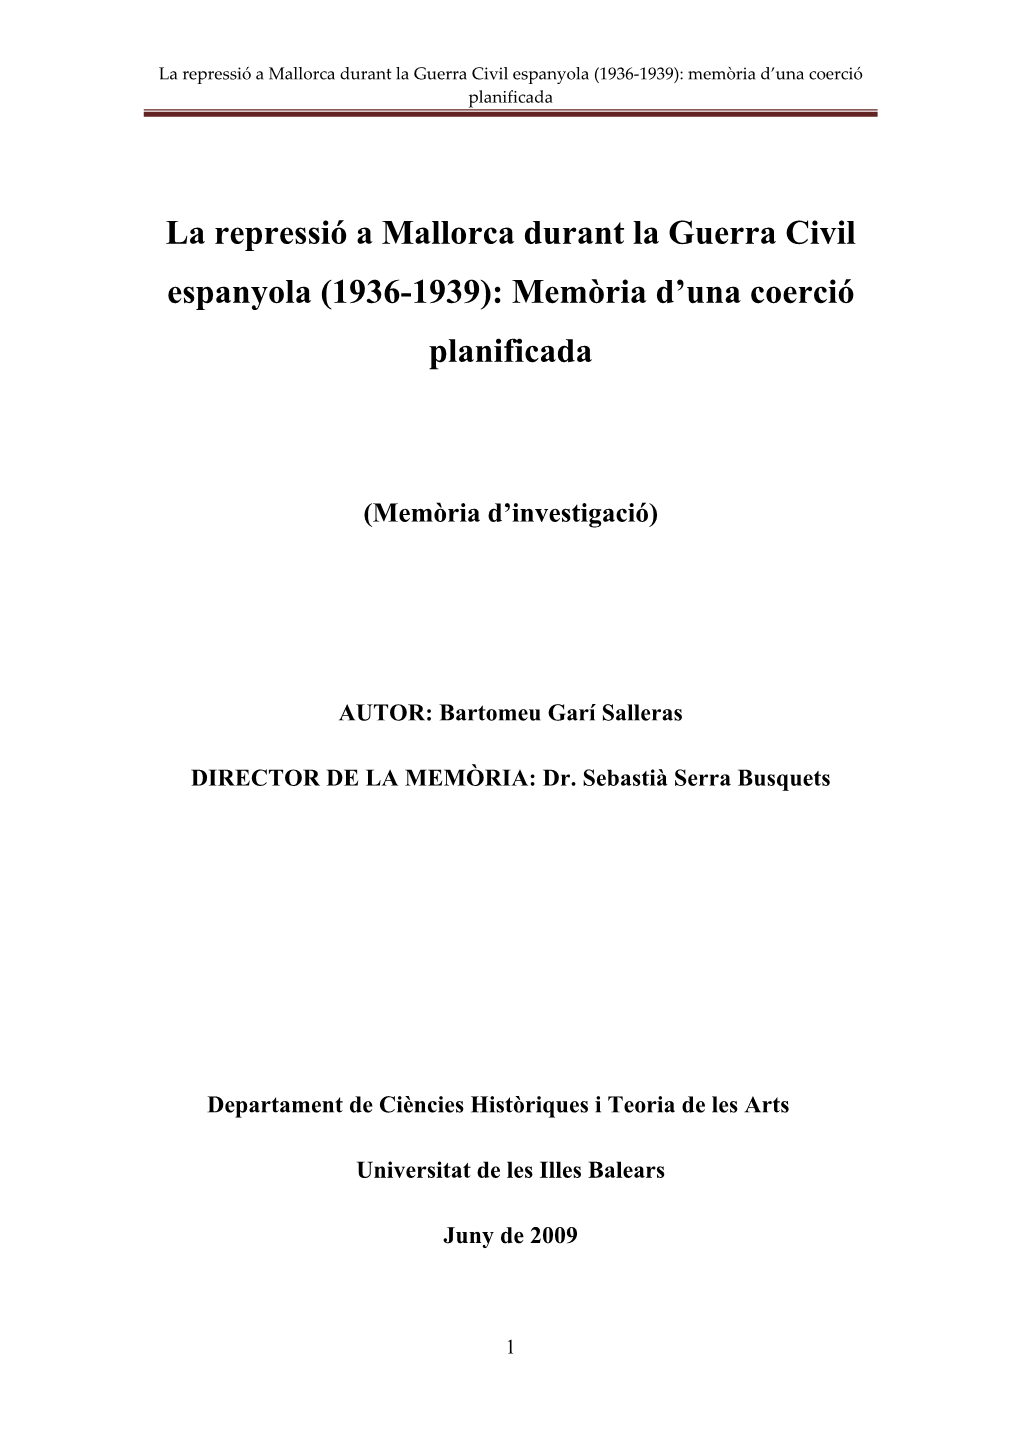 La Repressió a Mallorca Durant La Guerra Civil Espanyola (1936-1939): Memòria D’Una Coerció Planificada